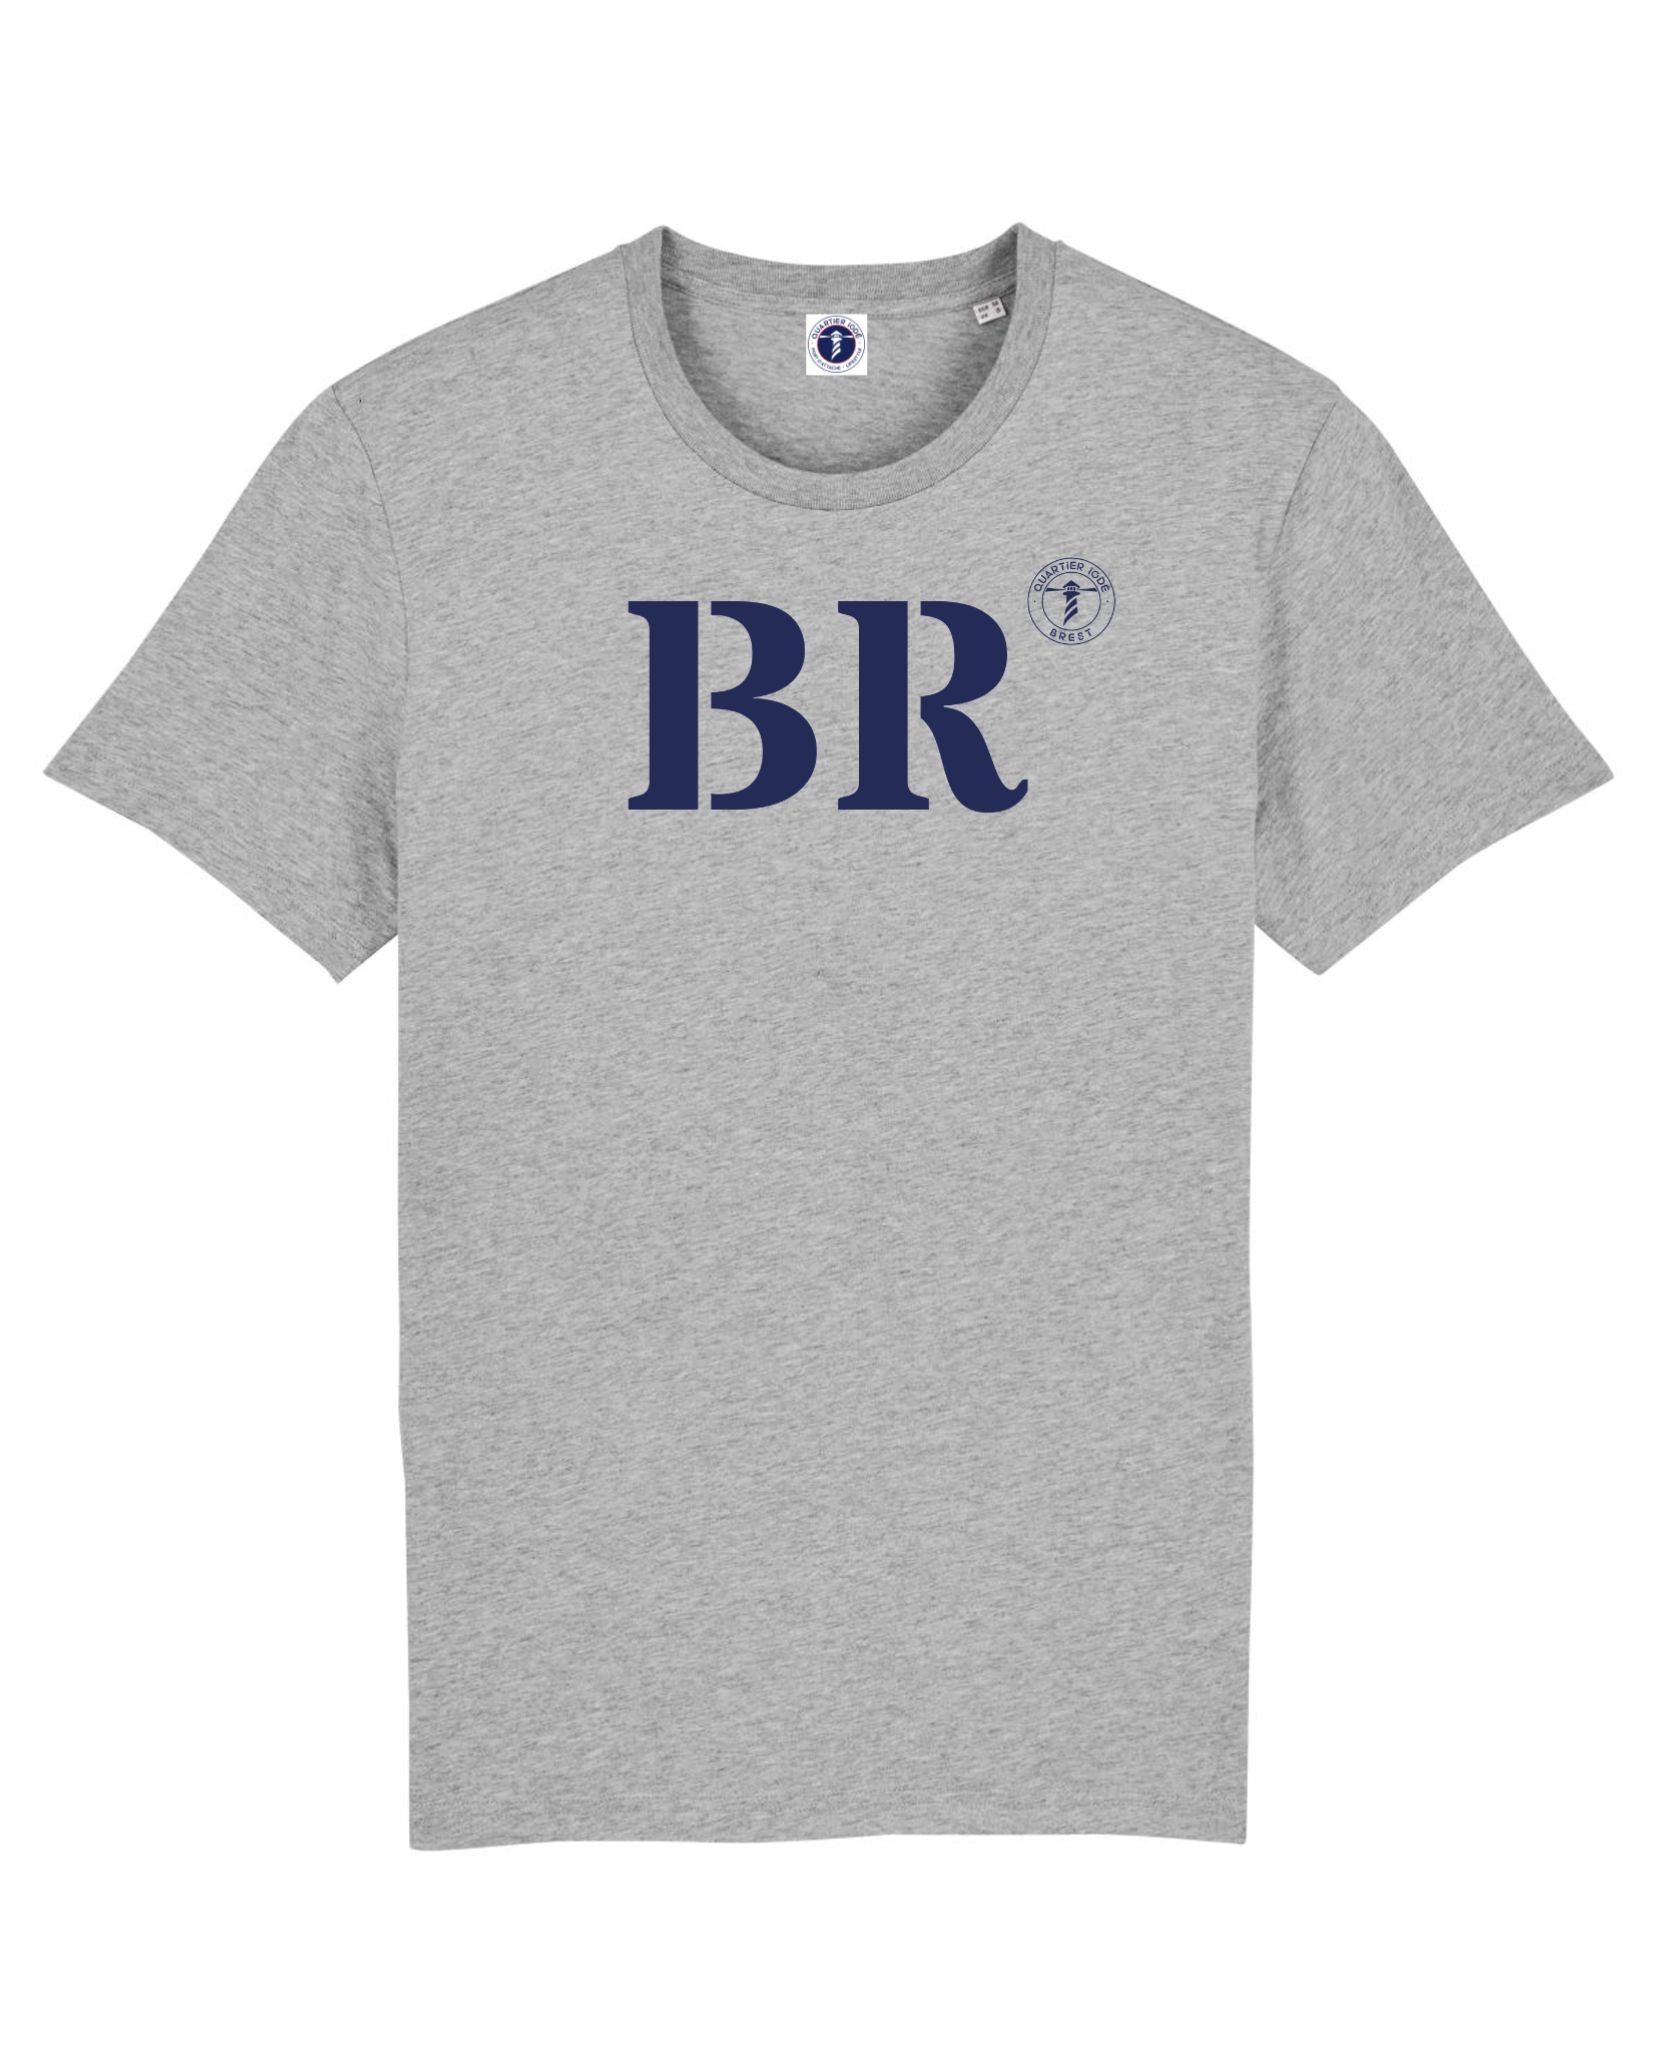 BR pour Brest ! Notre Tshirt breton à porter fièrement pour hommes et femmes, de la marque Quartier Iodé.